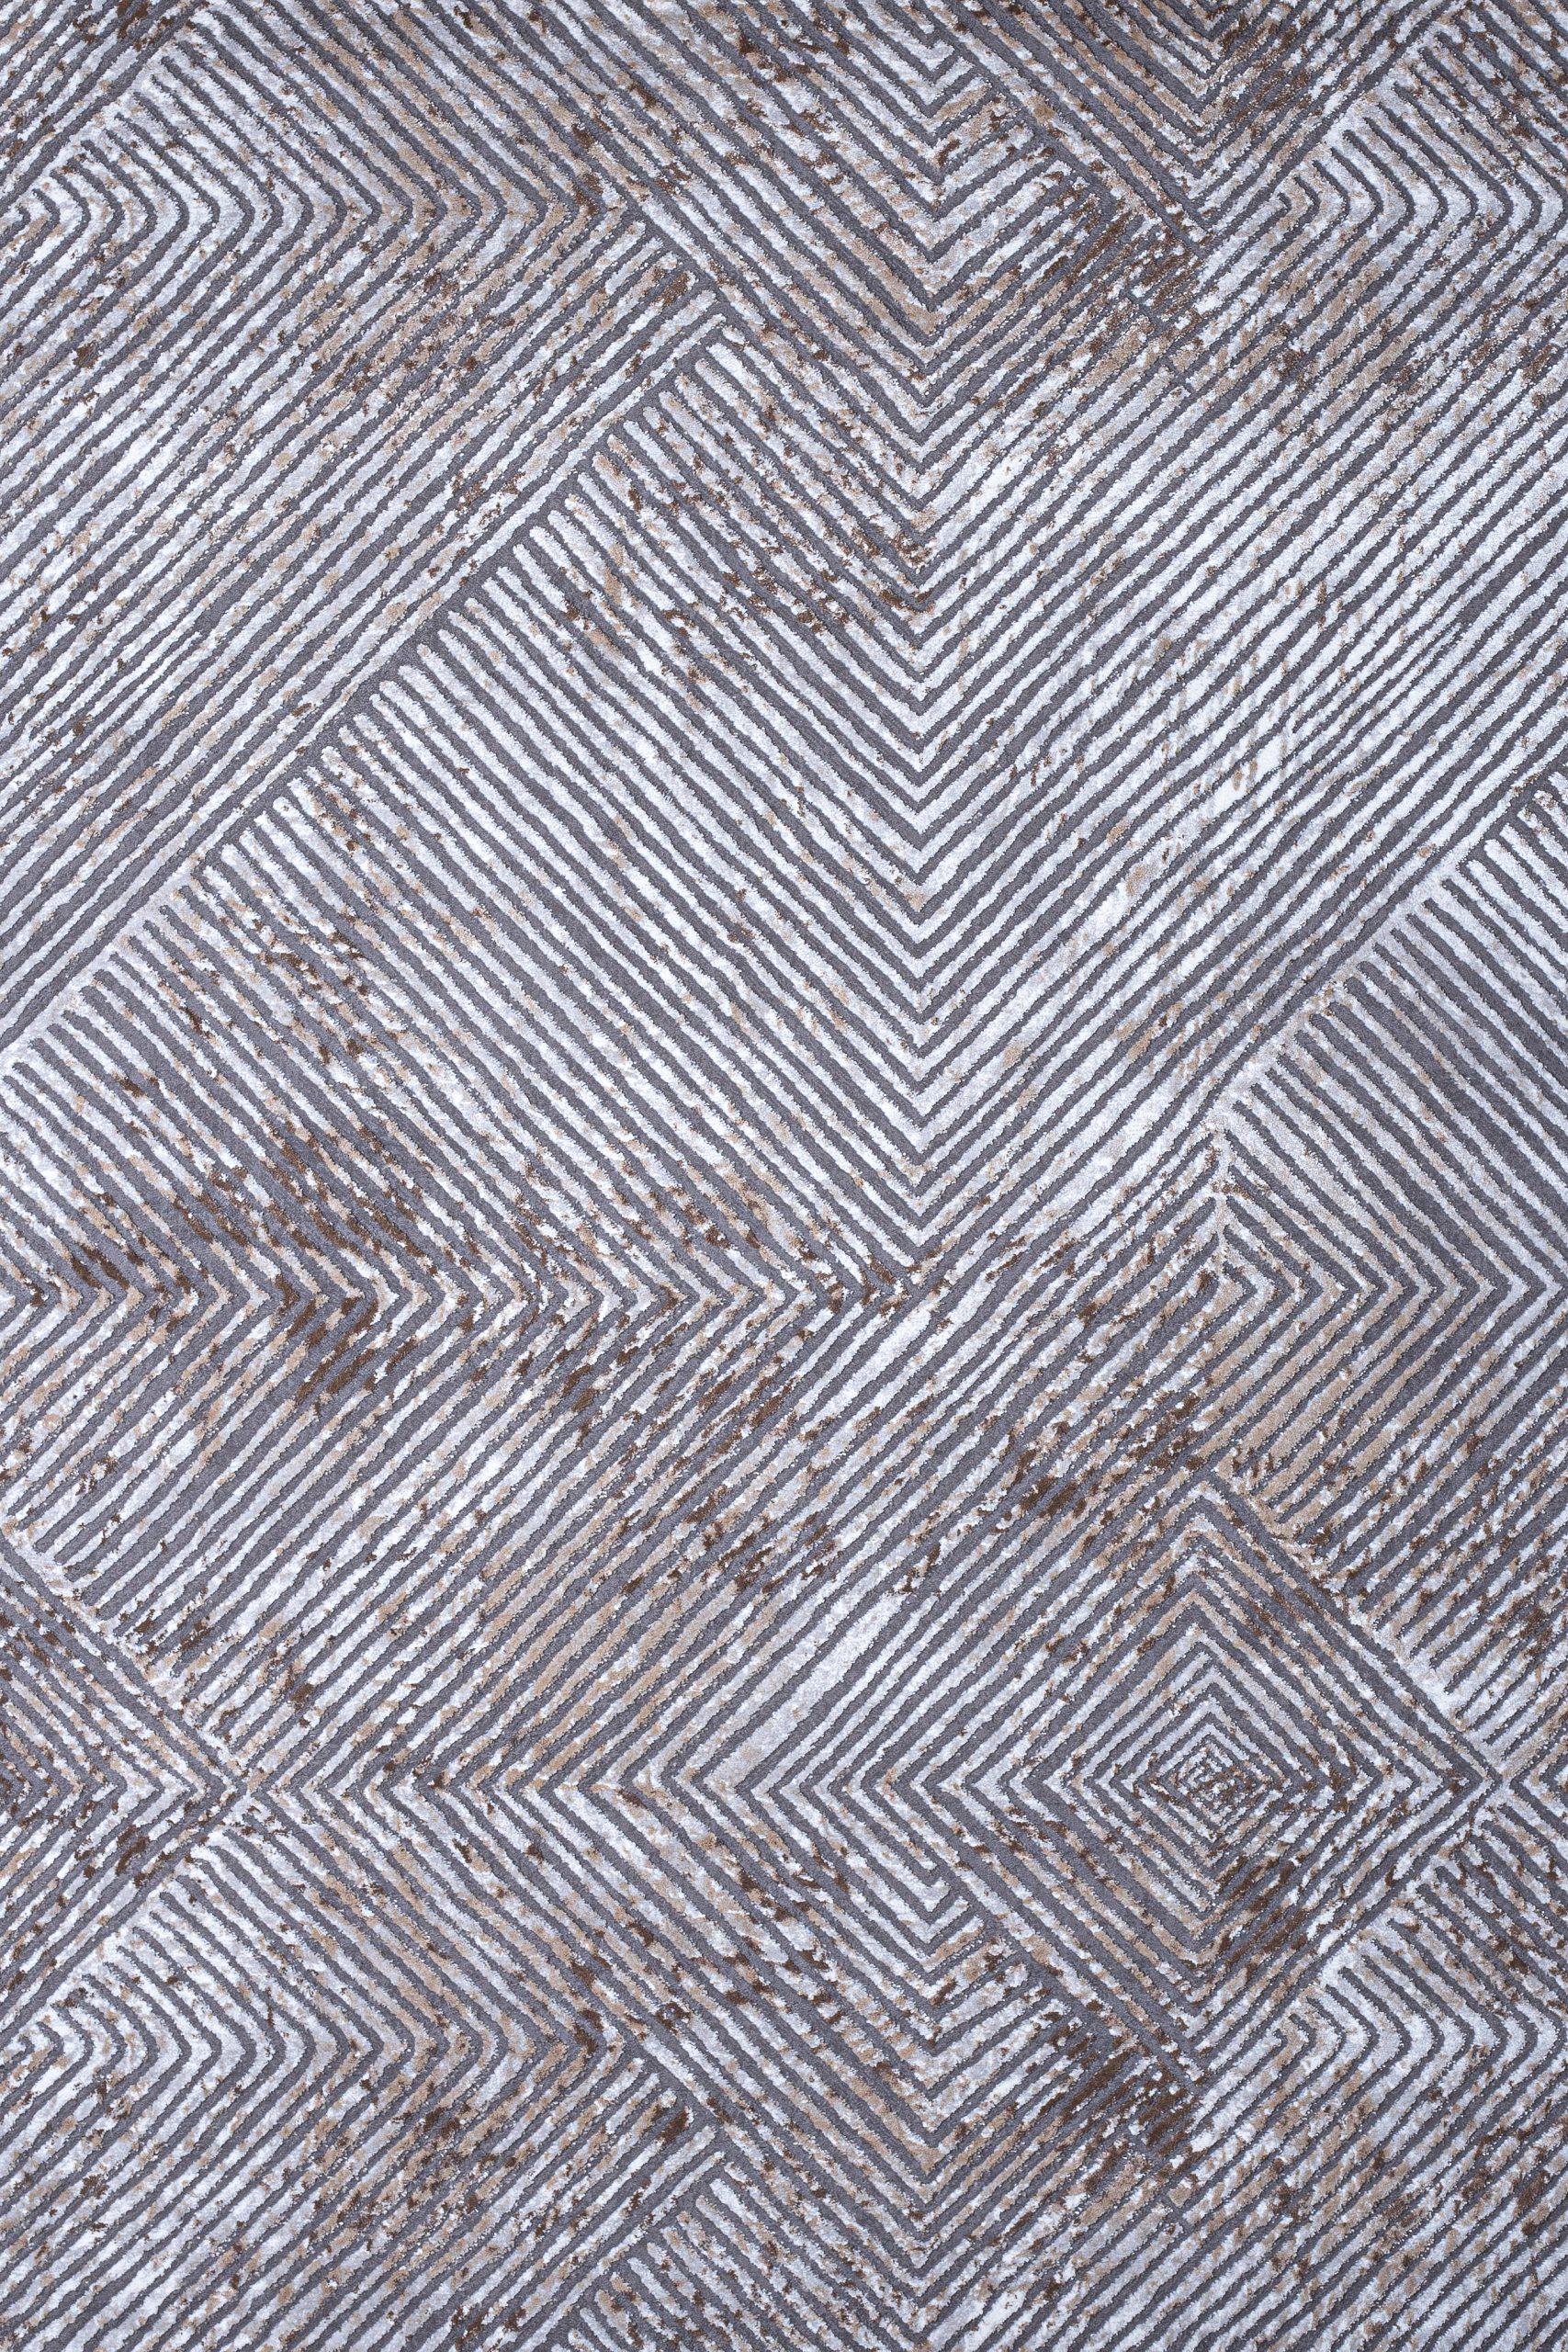 Γραμμικό χαλί γκρι μπεζ Ostia 7100/976 - 1,40x2,00 Colore Colori